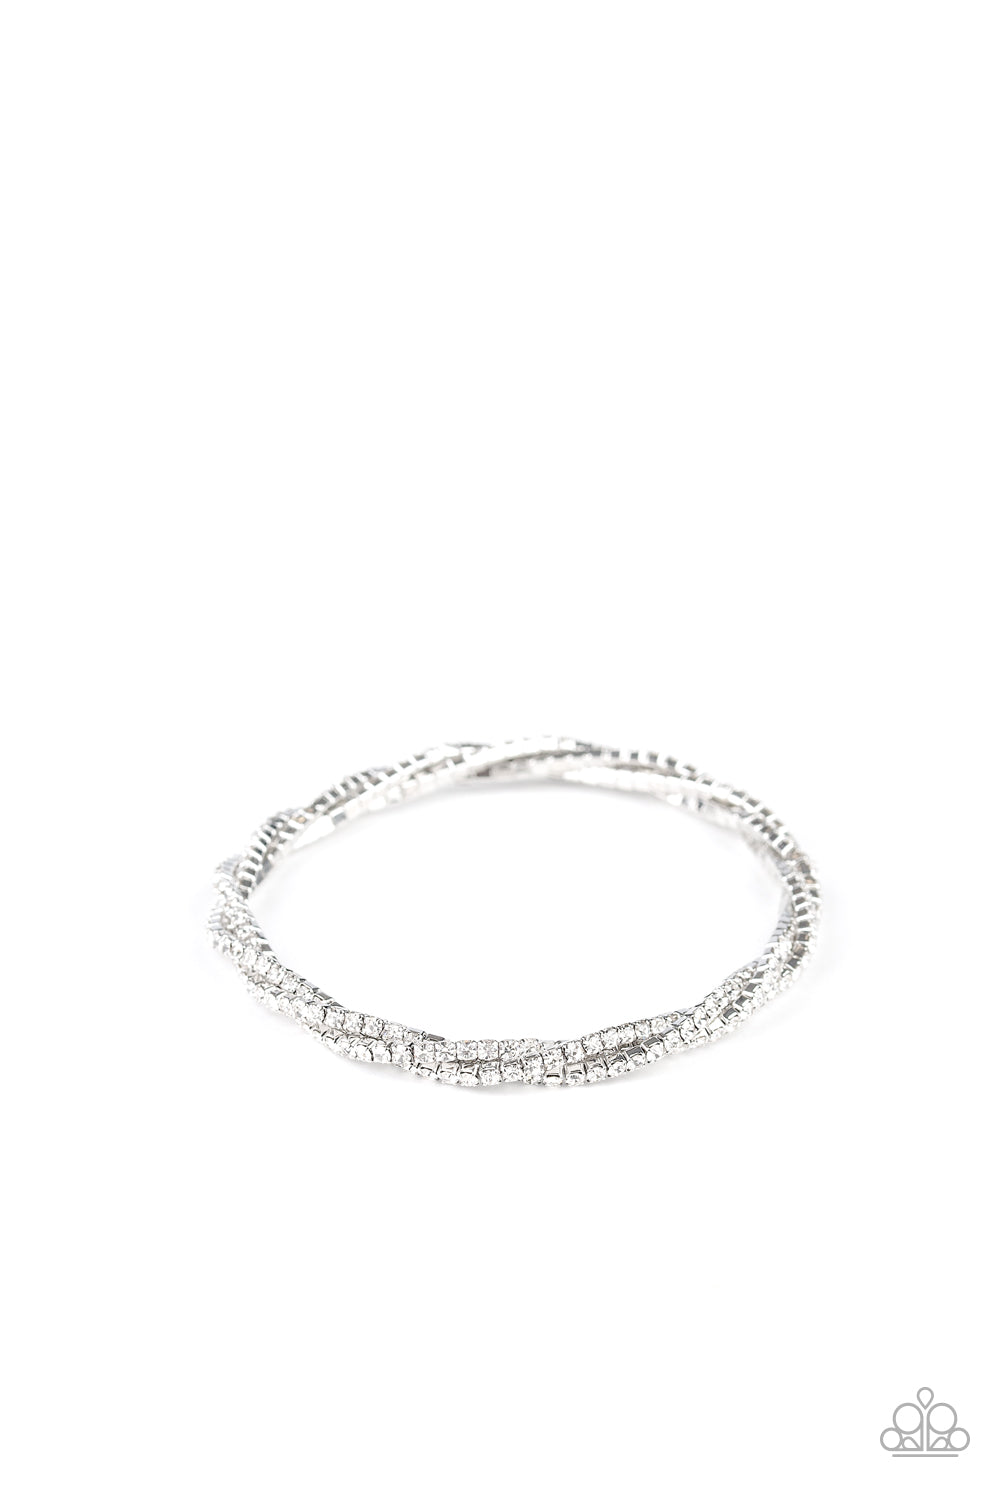 Glitzy Gleam - white - Paparazzi bracelet